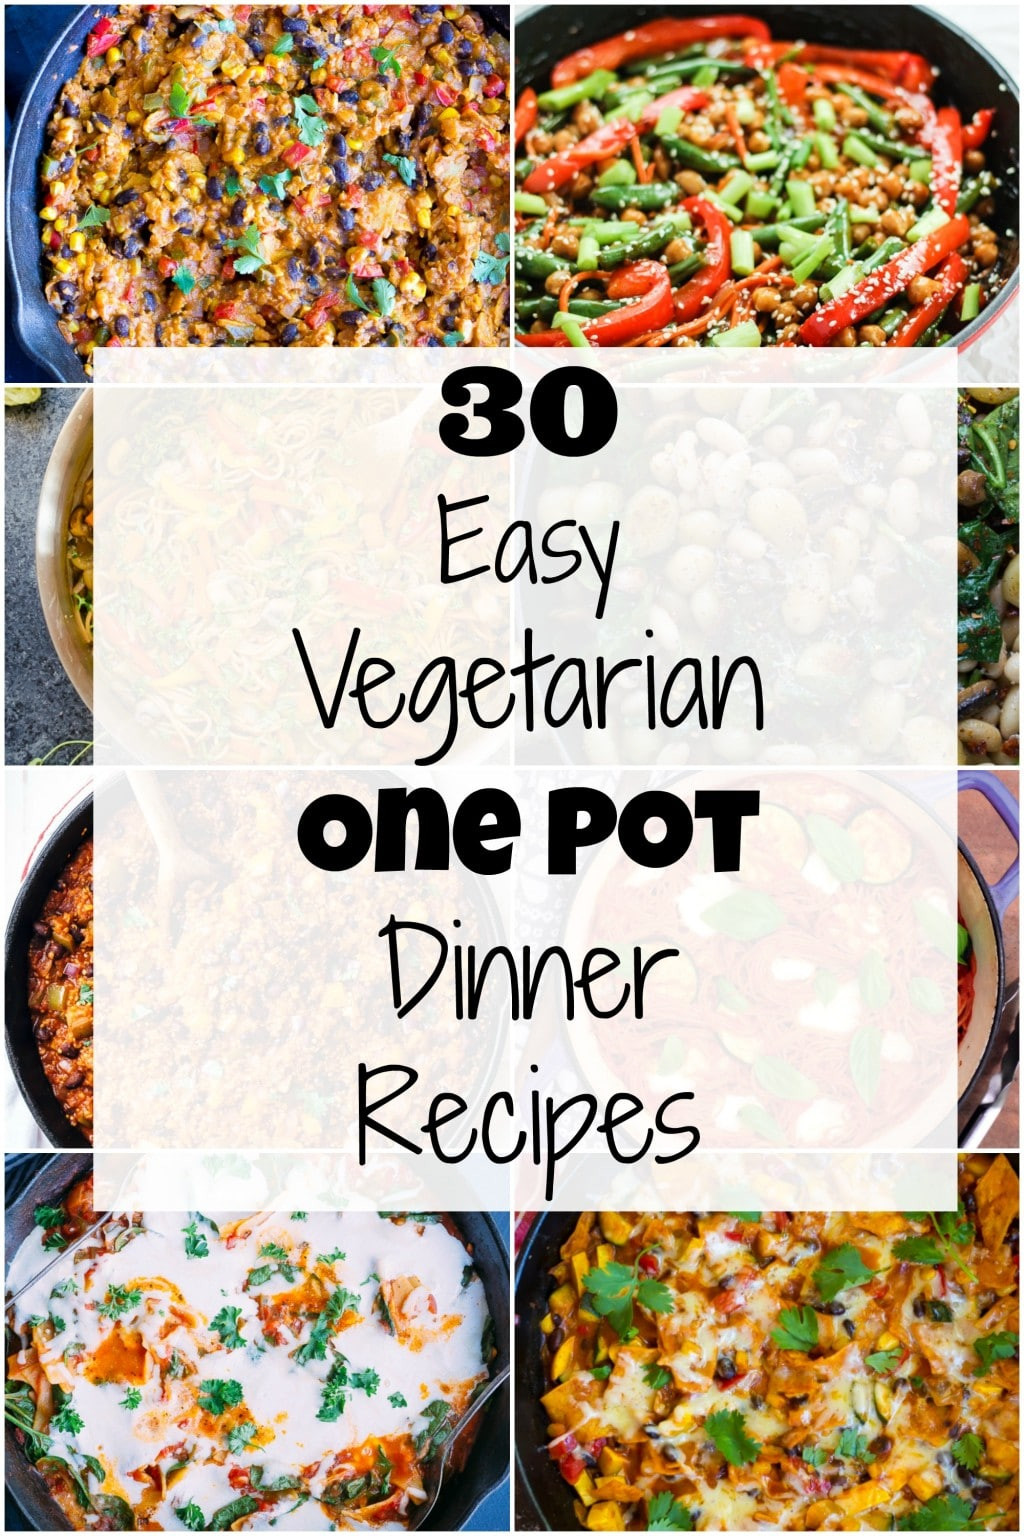 Dinner For One Recipes
 30 Easy Ve arian e Pot Dinner Recipes She Likes Food